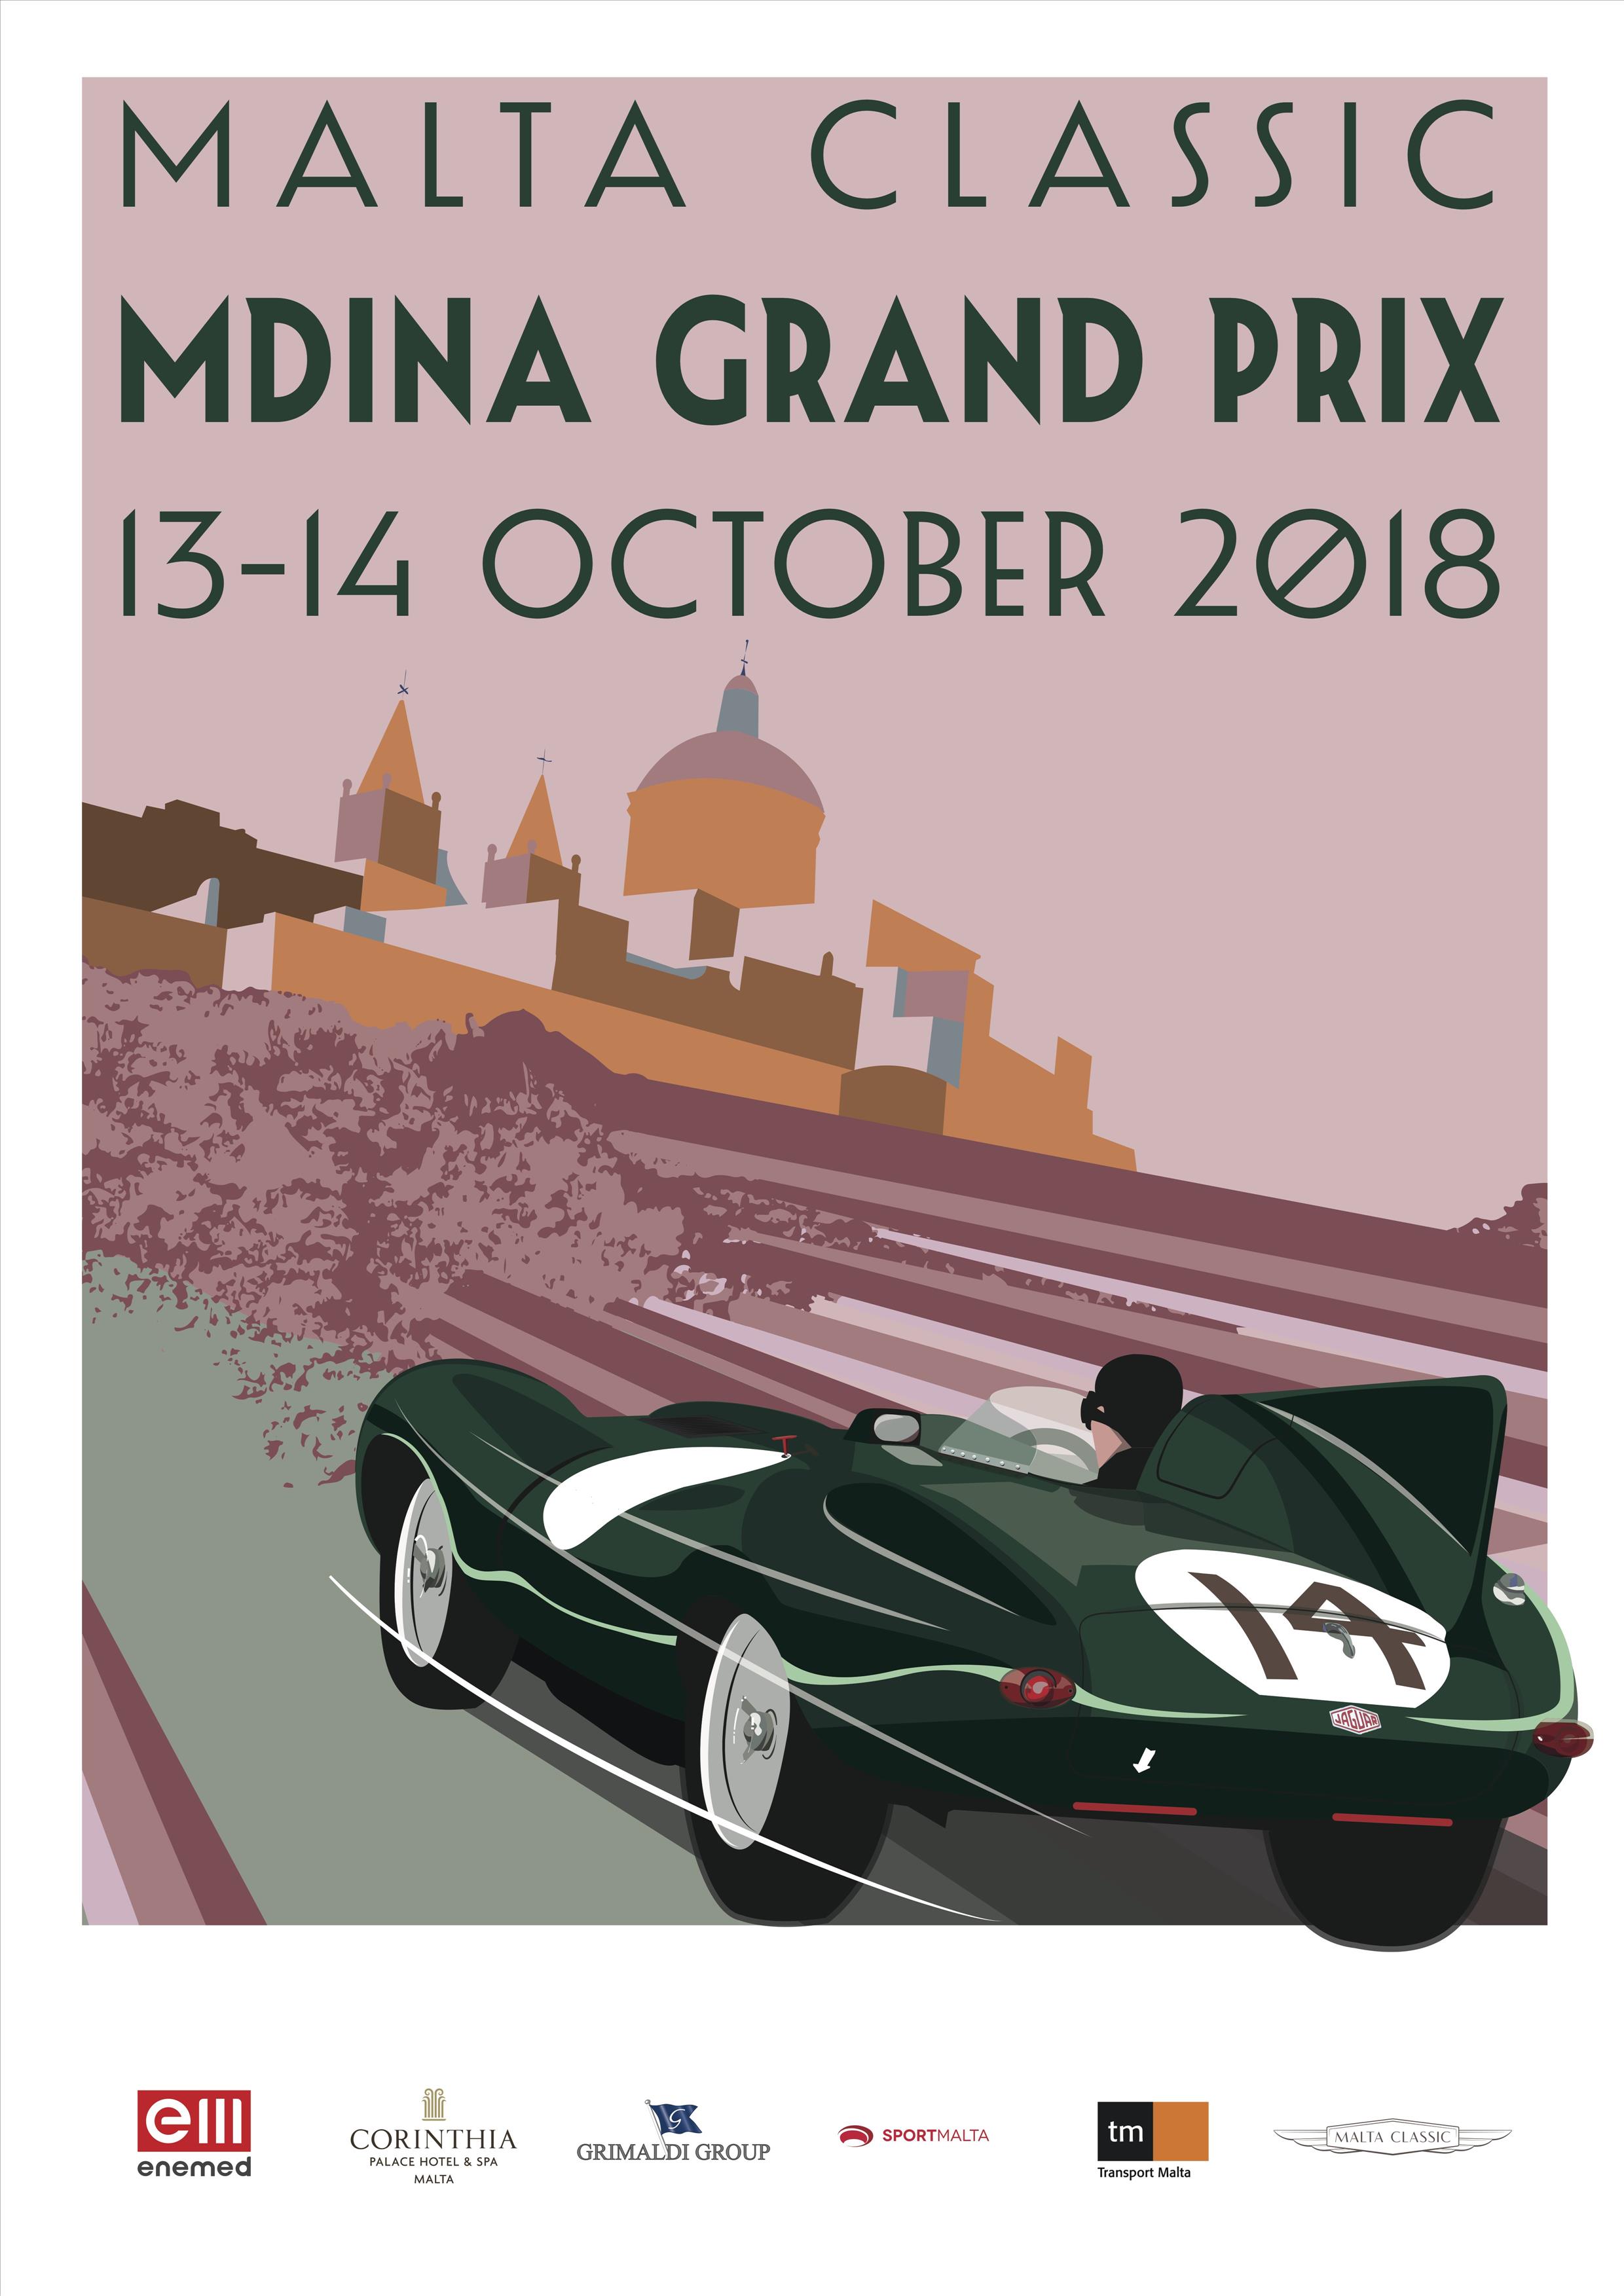 Malta Classic 2018 poster